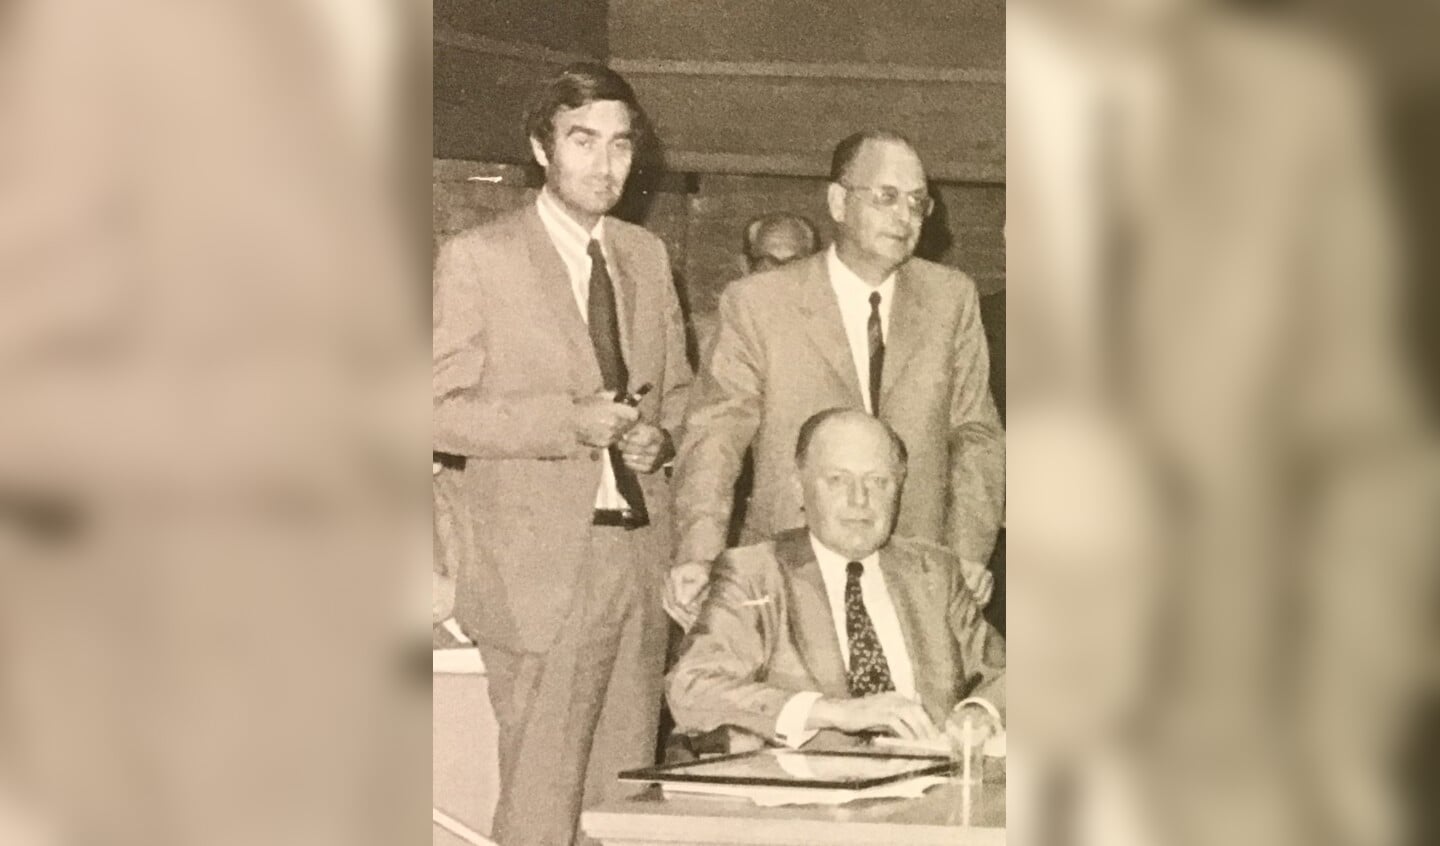 1974 Wethouder Paul Pels zittend met staand v.l.n.r. zijn fractiegenoten Herman van Wijk en Jaap Mennema. Foto Oud Archief Voorschoten te Wassenaar.